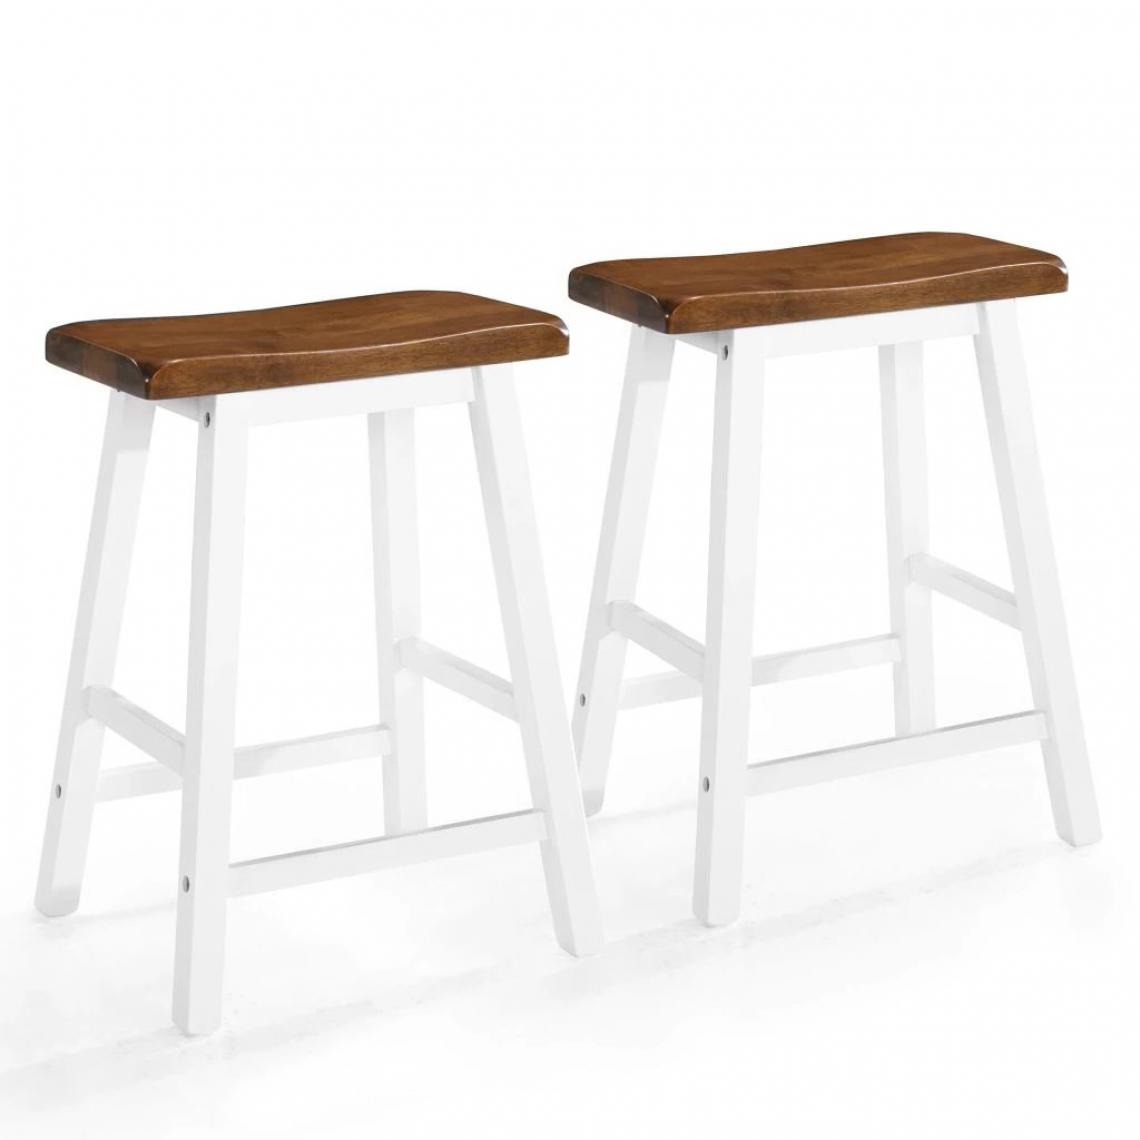 Helloshop26 - Lot de deux tabourets de bar design chaise siège bois massif 1202055 - Tabourets